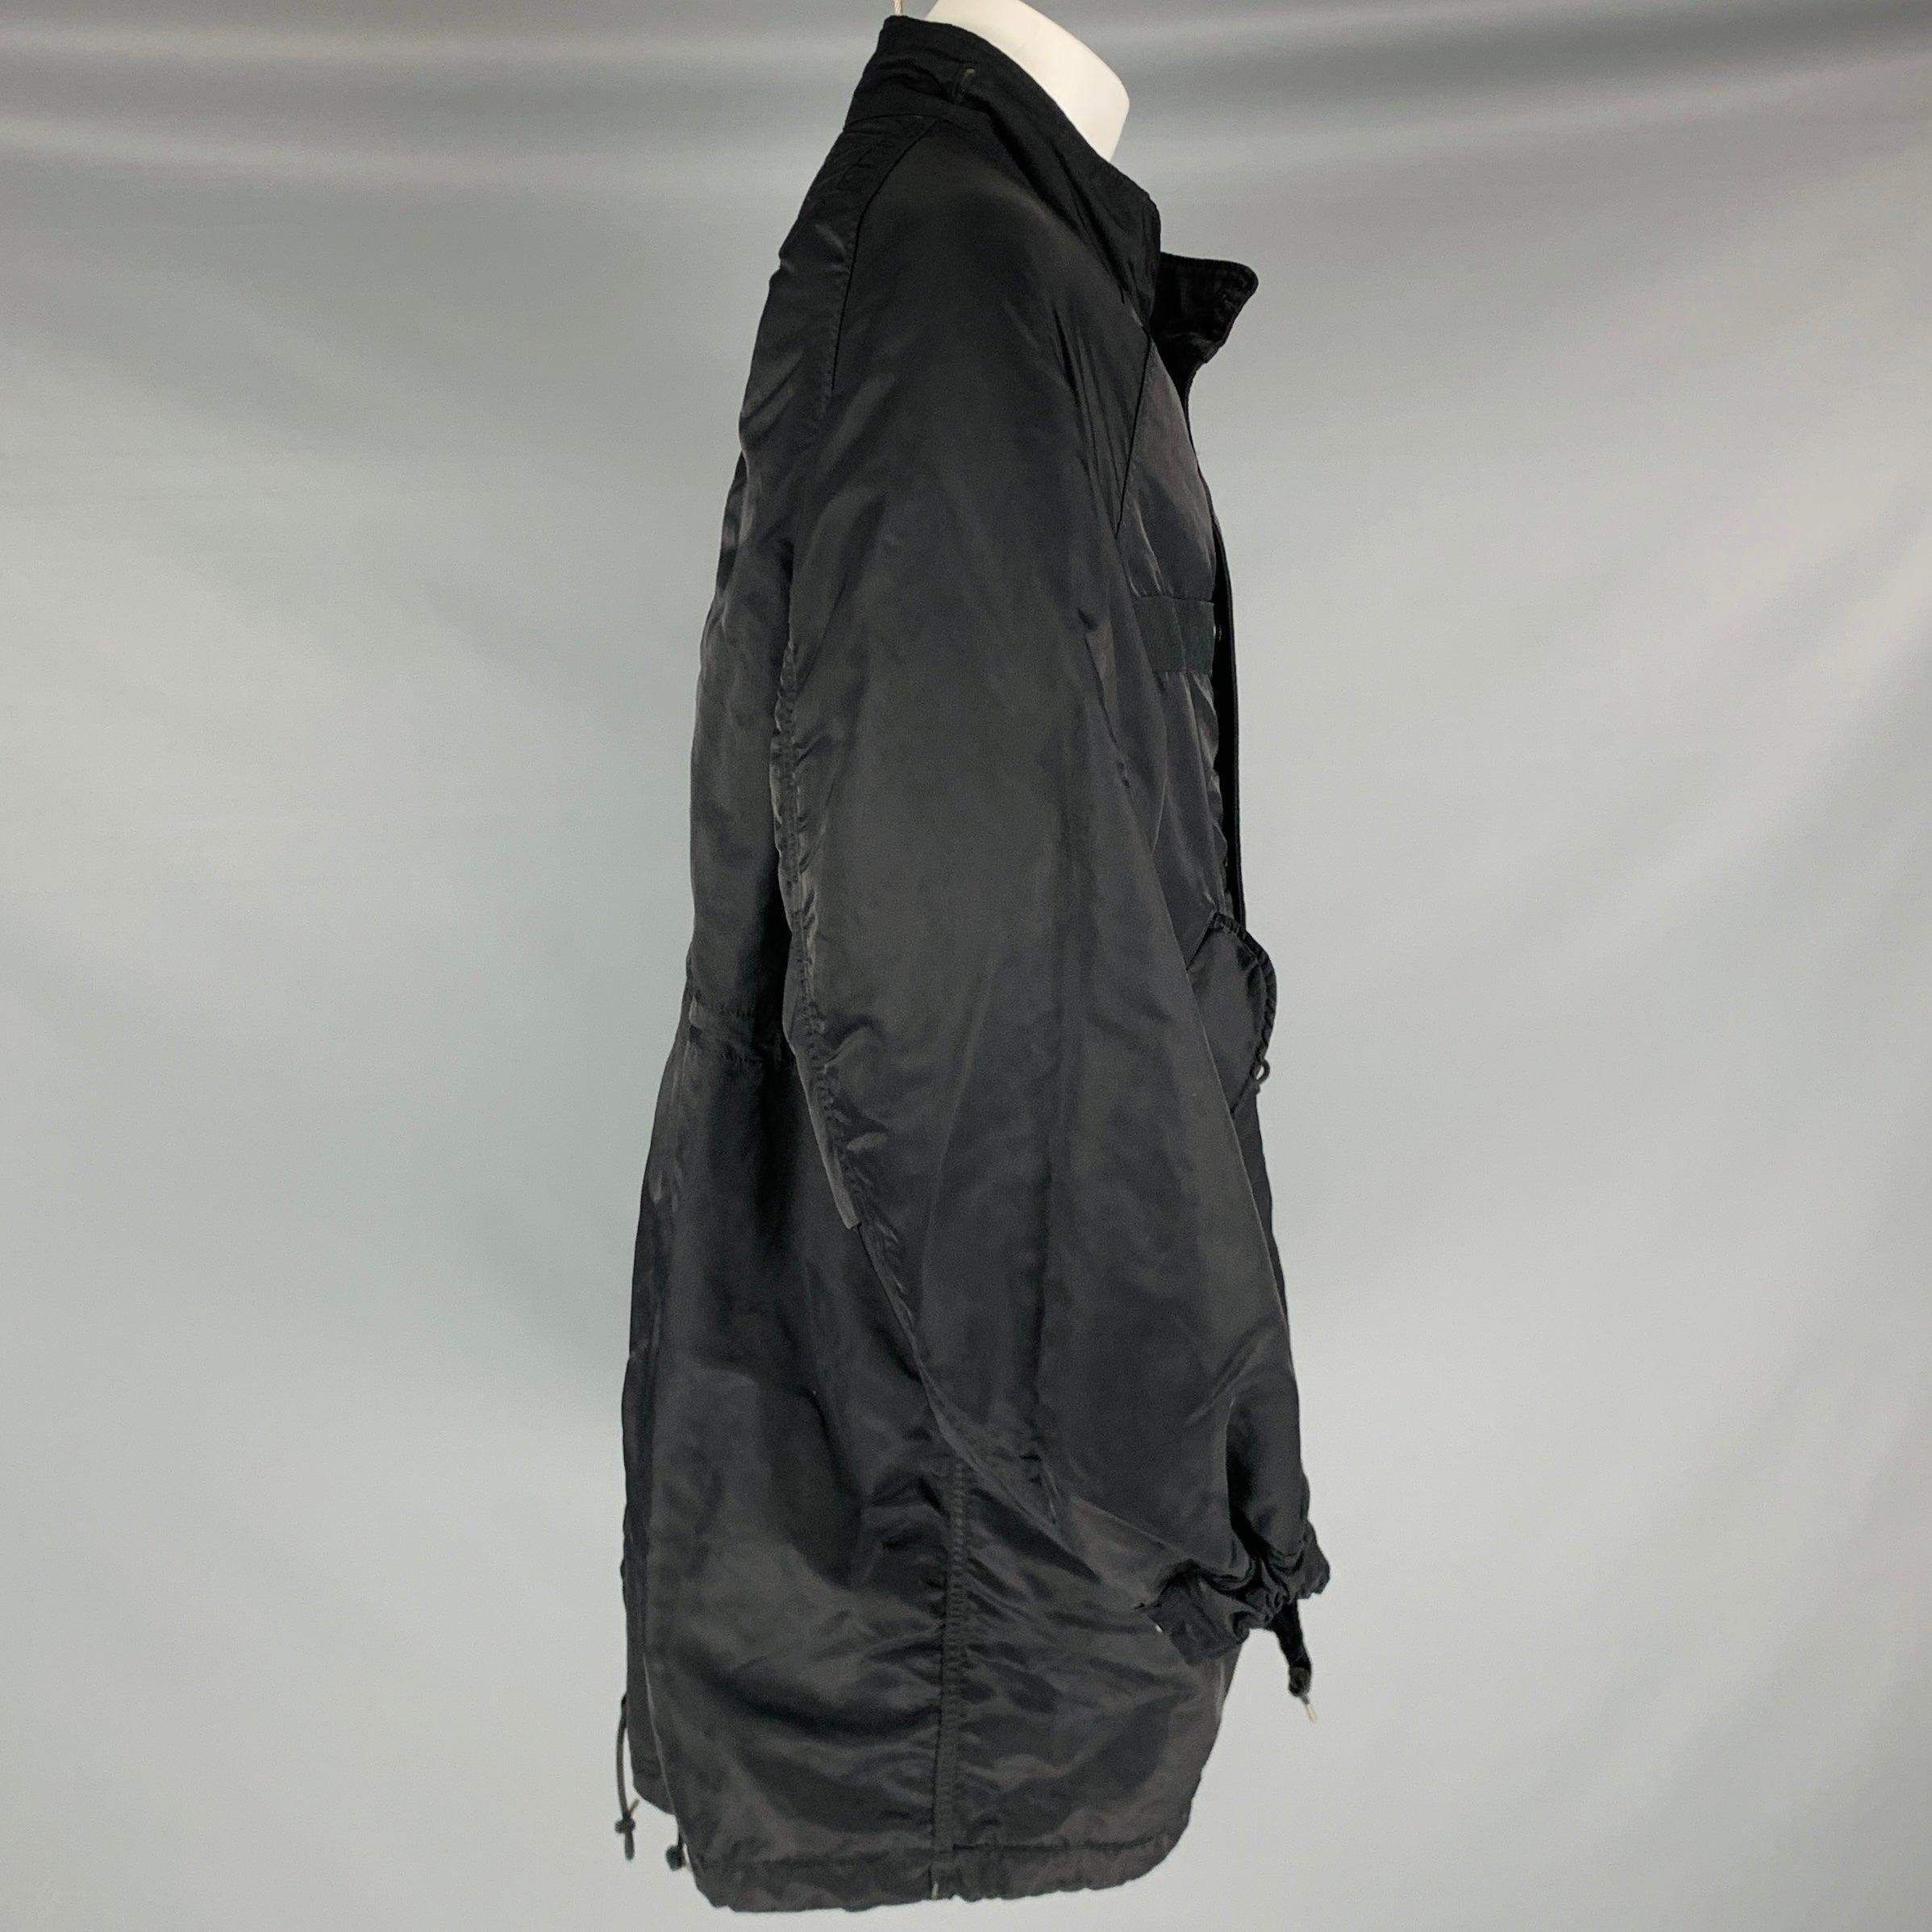 VISVIM -Six Five Fishtail Parka- Size S Black Nylon Parka Coat Excellent état - En vente à San Francisco, CA